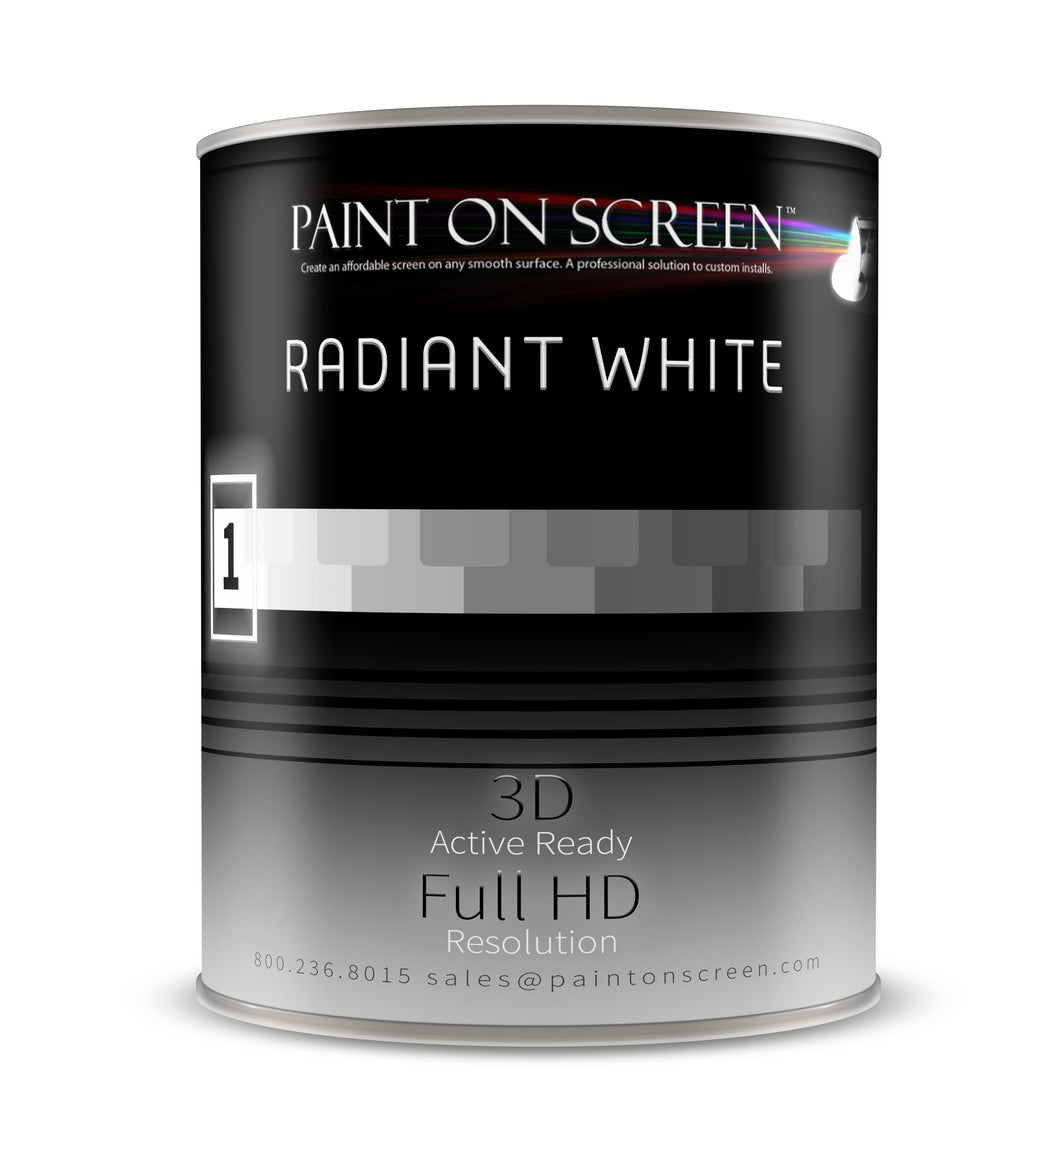 Radiant White